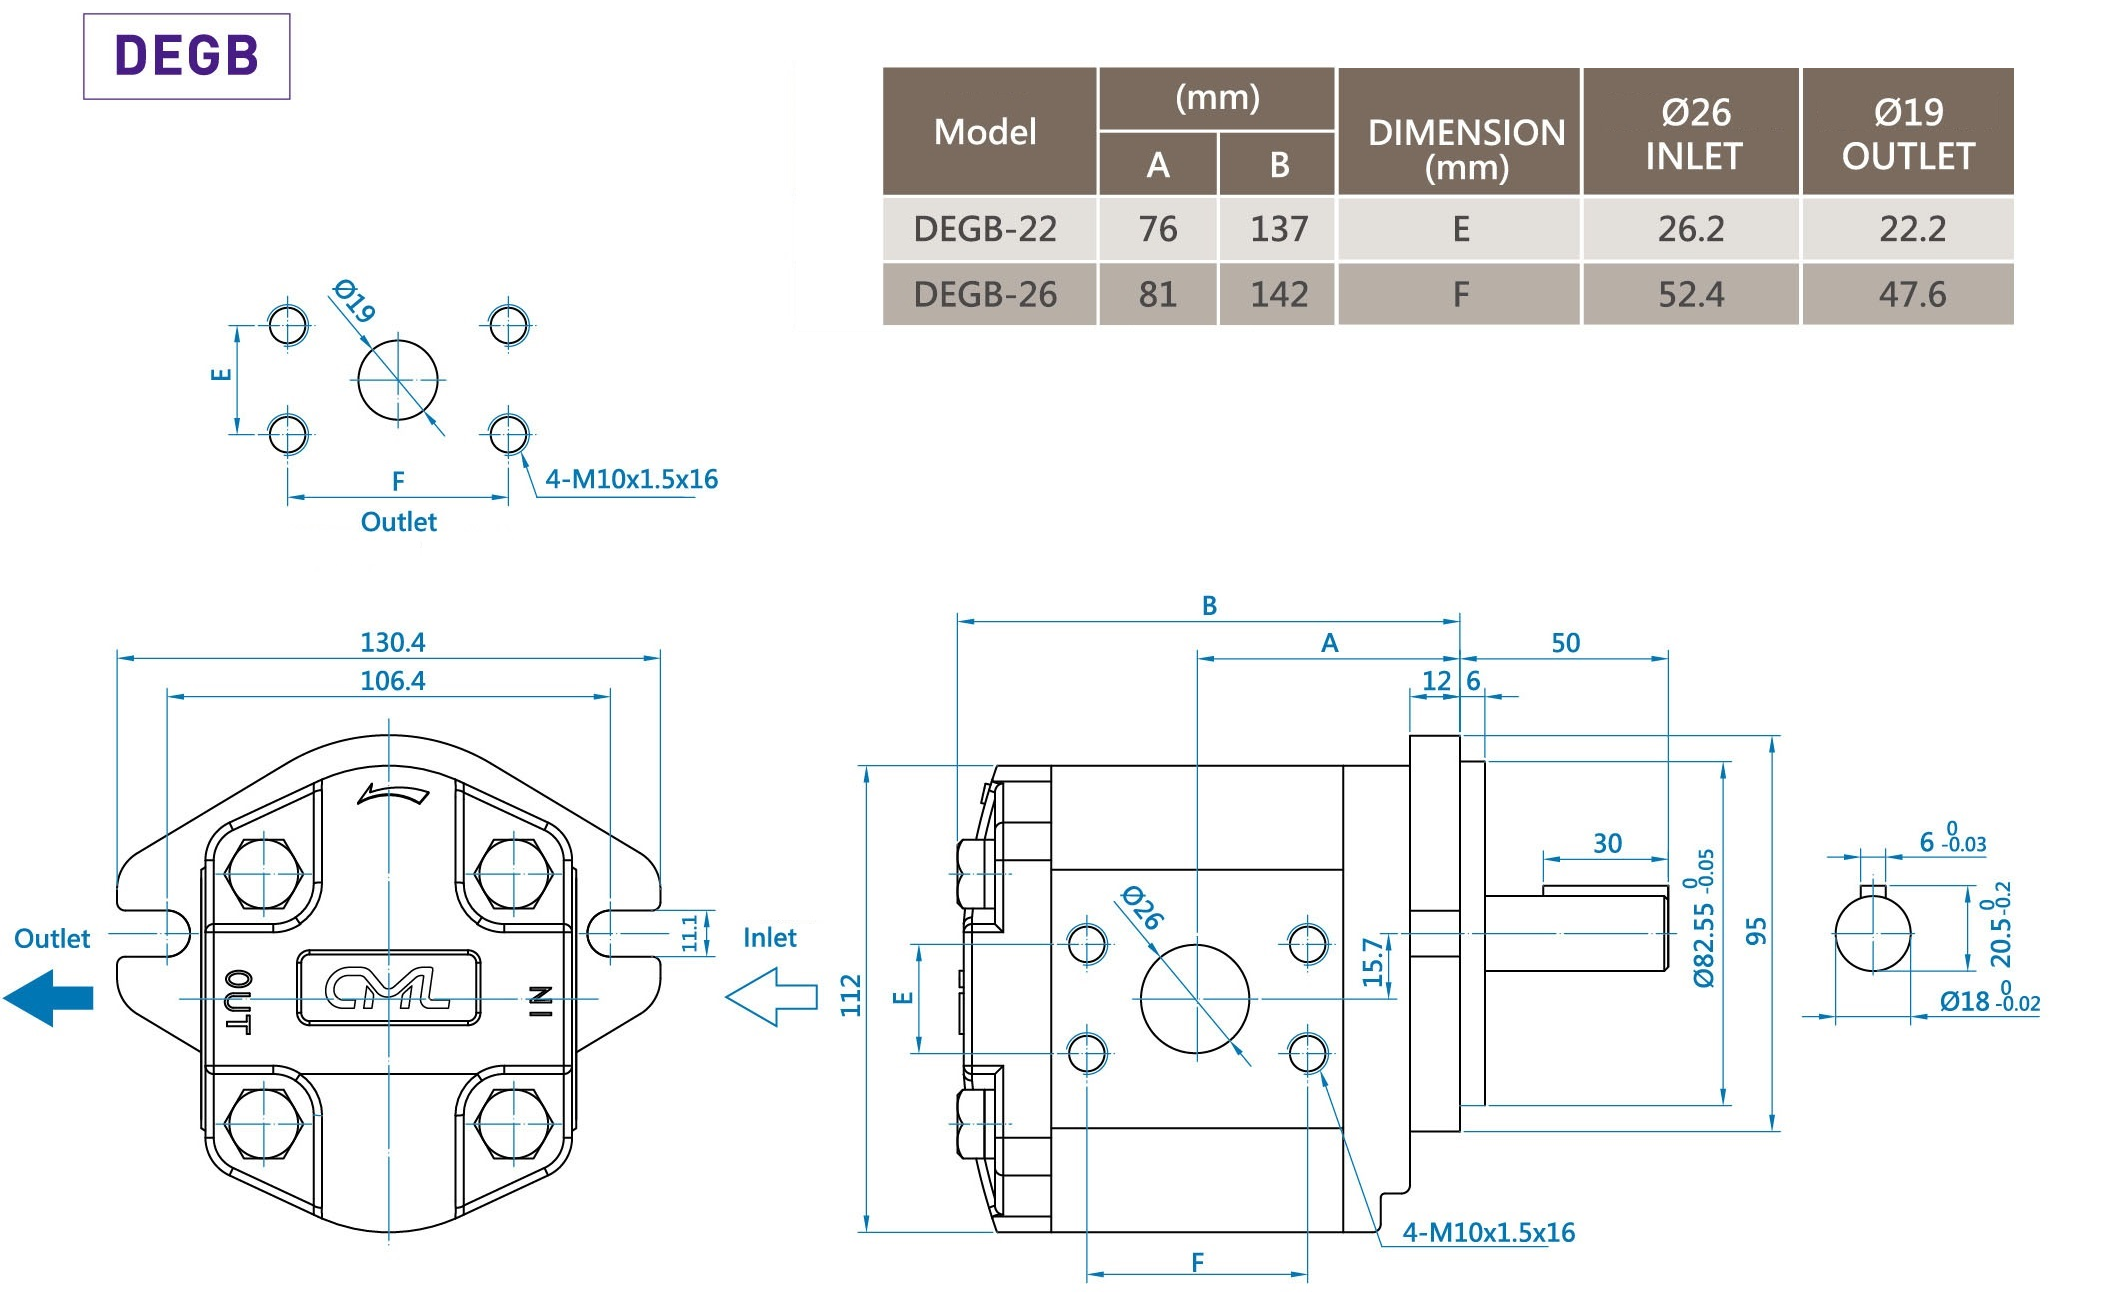 CML Doppia pompa a ingranaggi Serie B a basso rumore DEGB Misurazione, dimensioni, diagramma